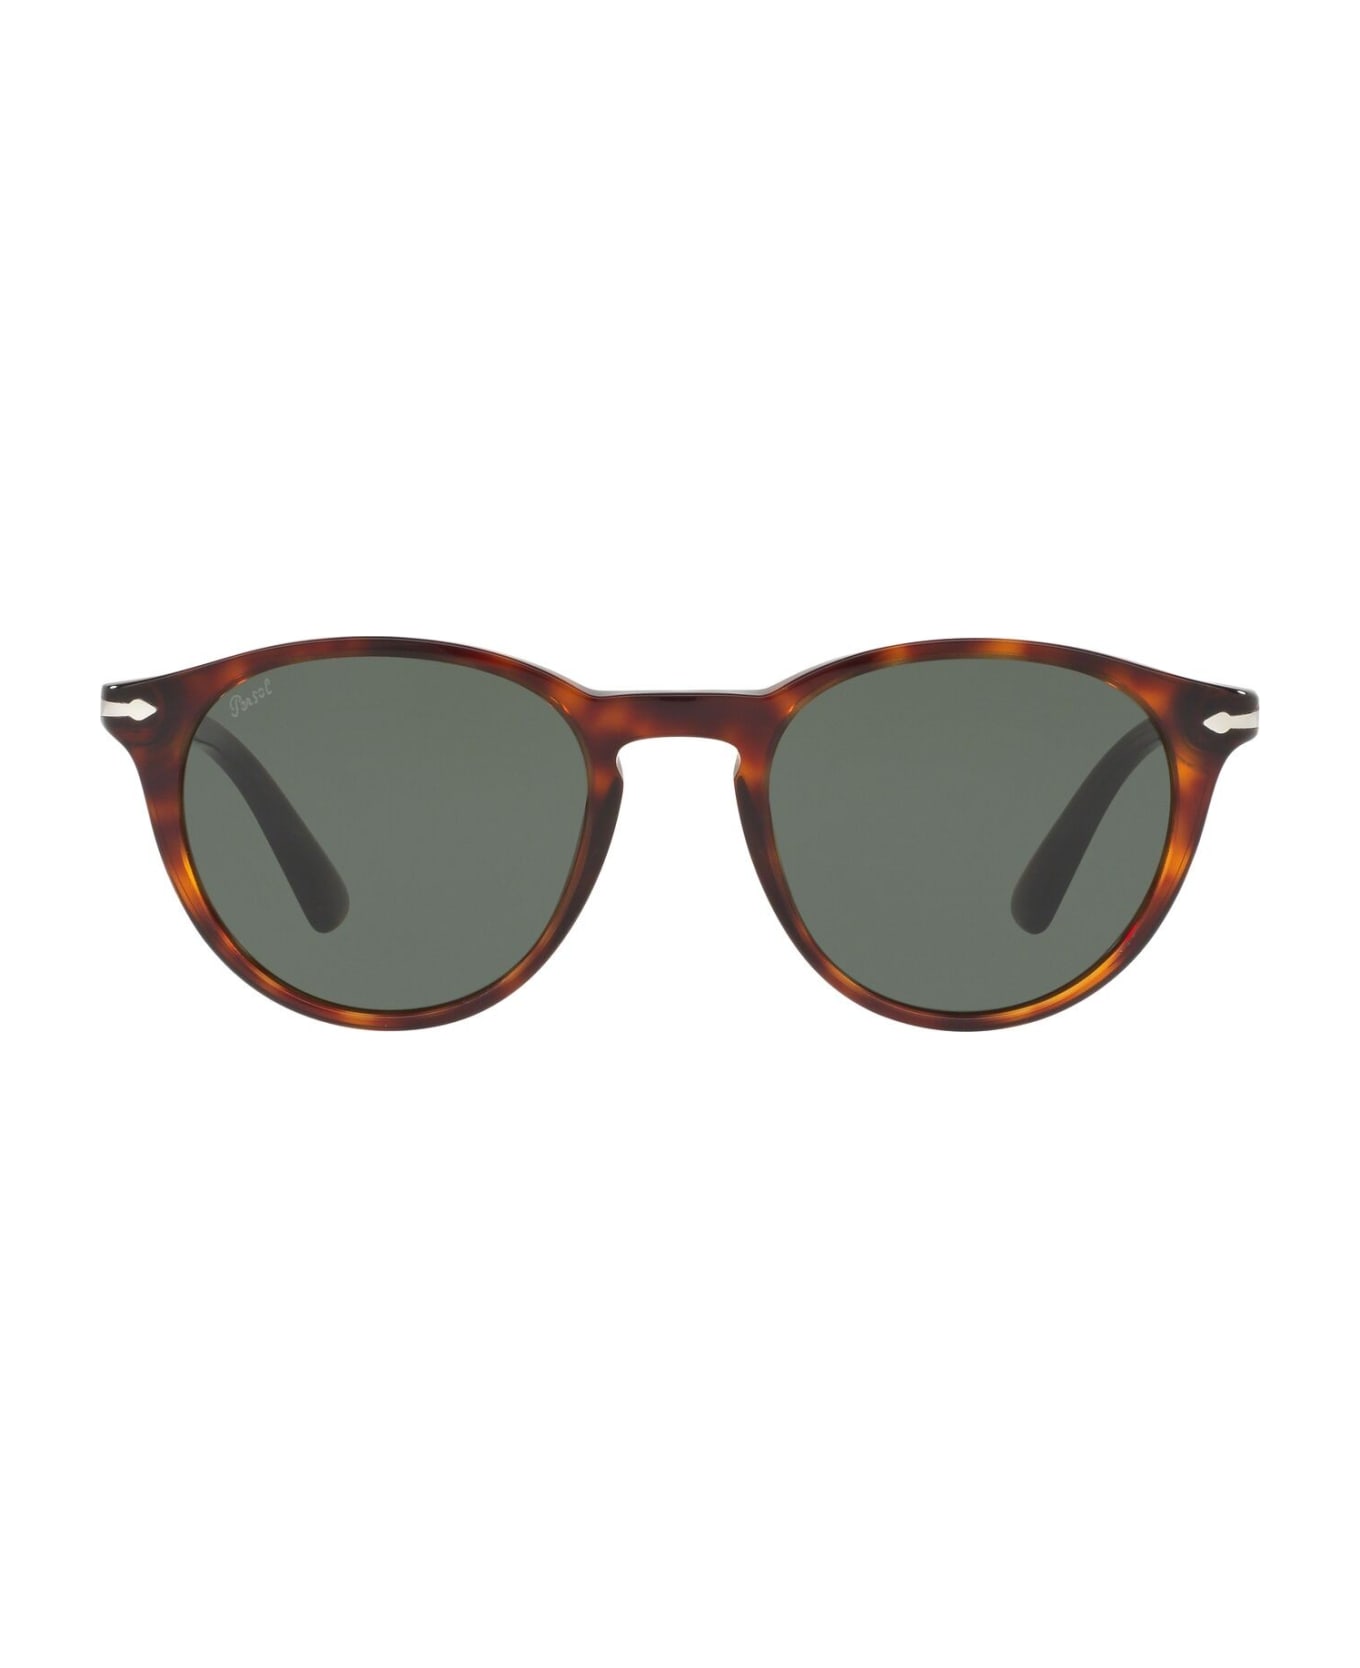 Persol Sunglasses - Marrone tartarugato/Verde